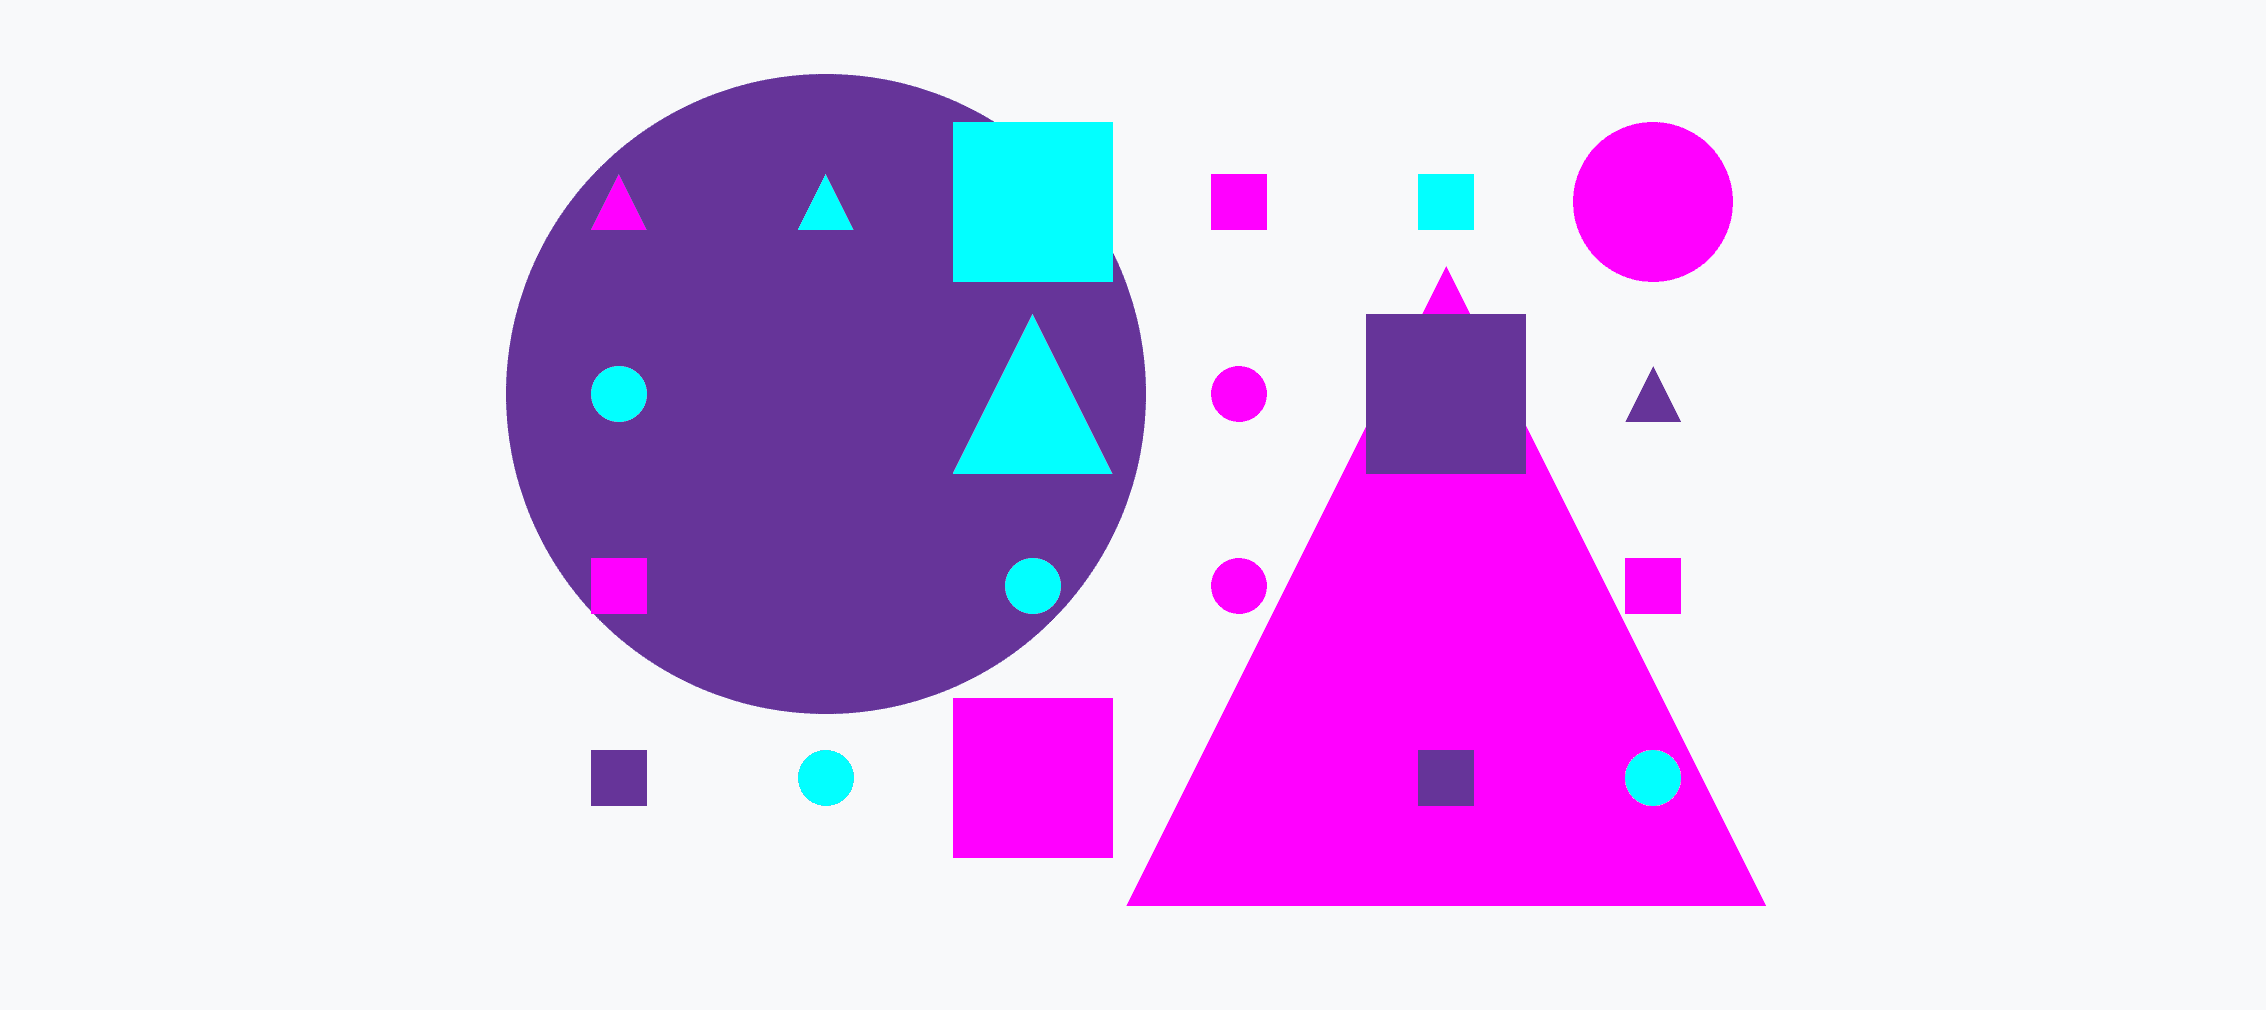 由大小不一的圆圈、三角形和正方形组成的彩色网格。